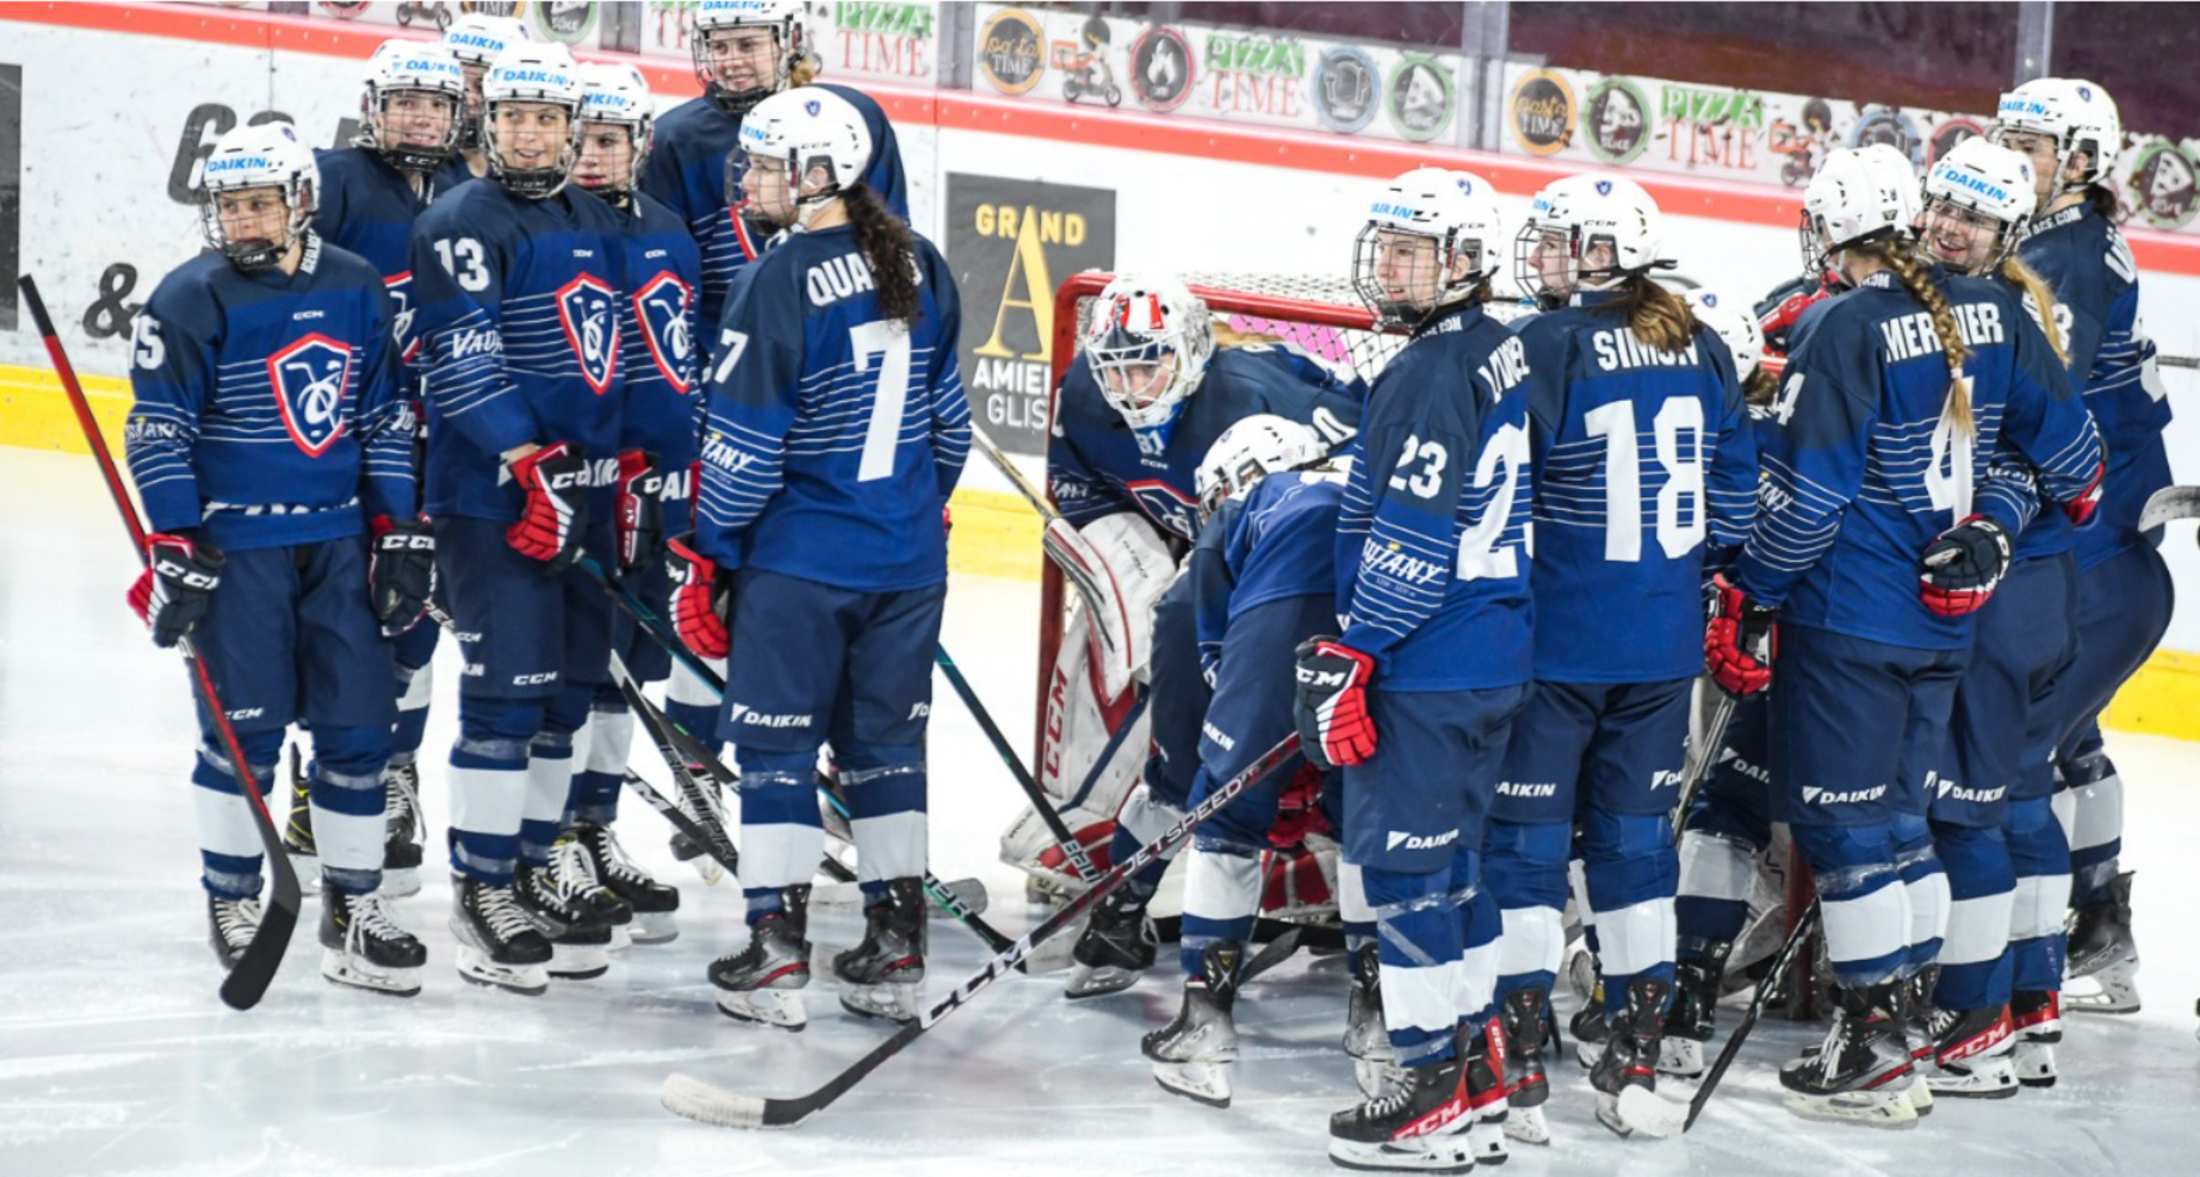 L'équipe de France de hockey sur glace affrontera la Finlande ce soir pour son premier match du mondial